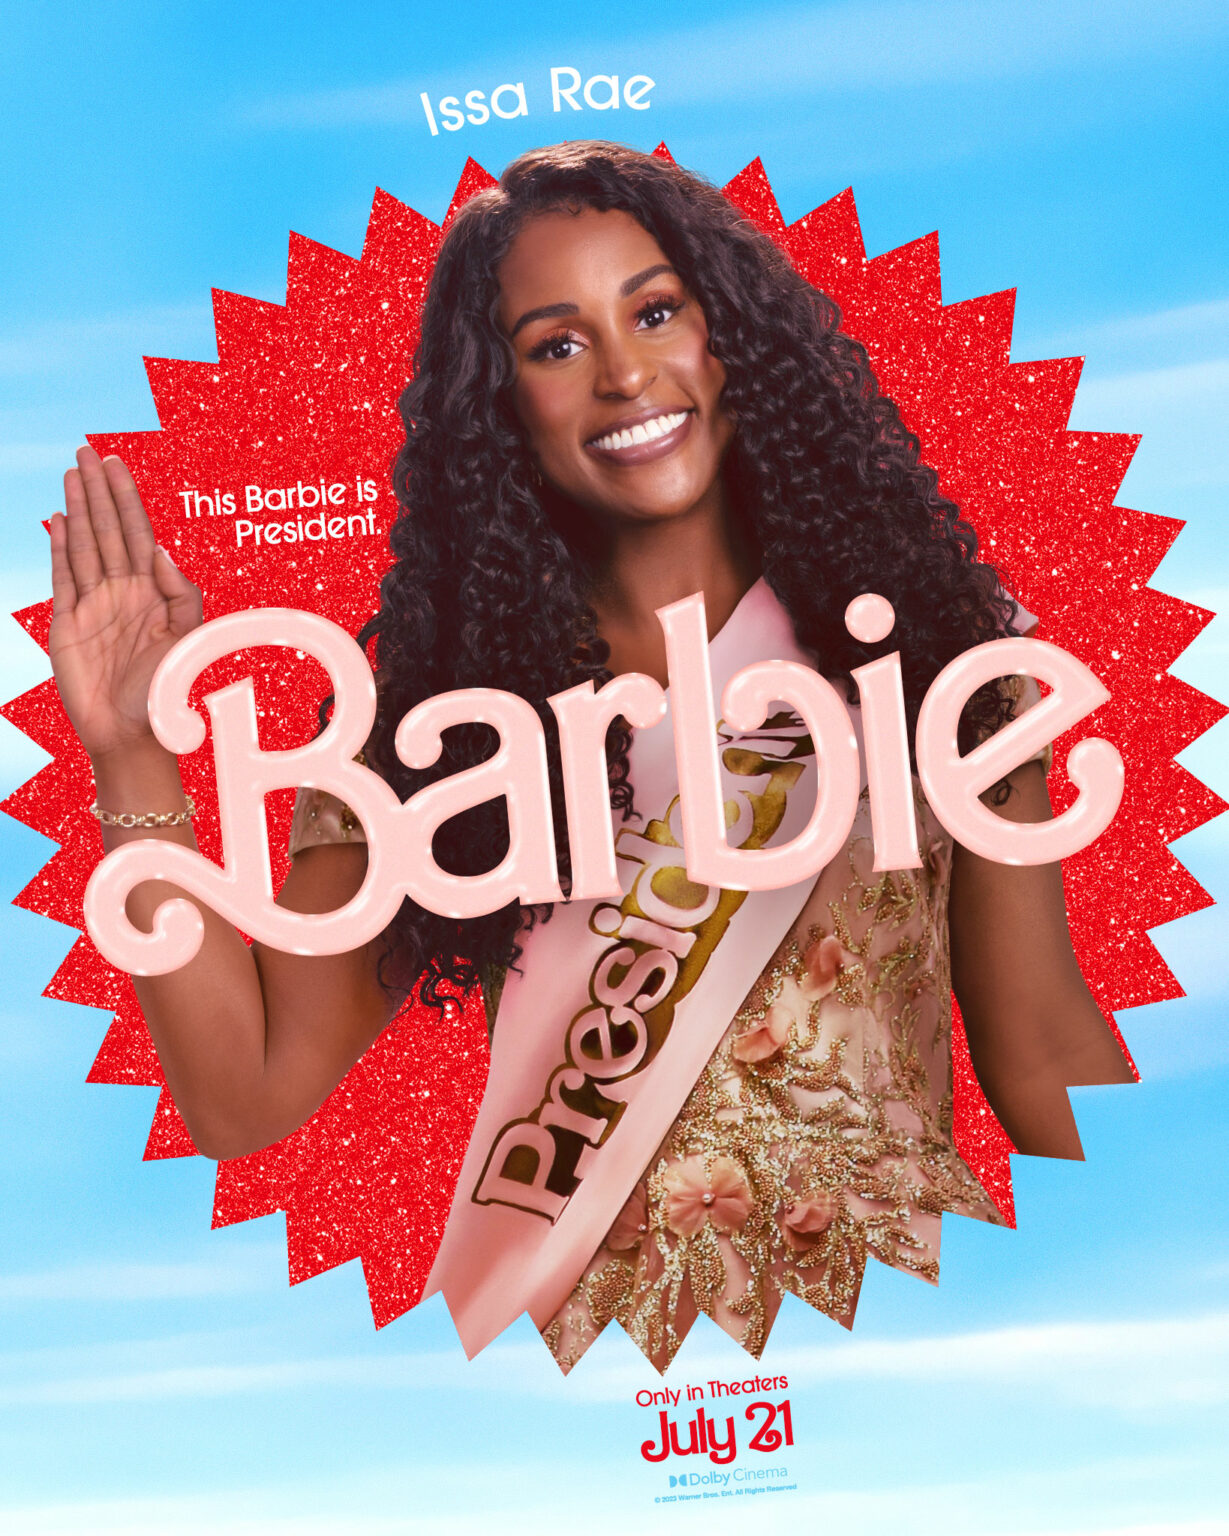 “Barbie” La próxima película lanza nuevos pósters y trailer www